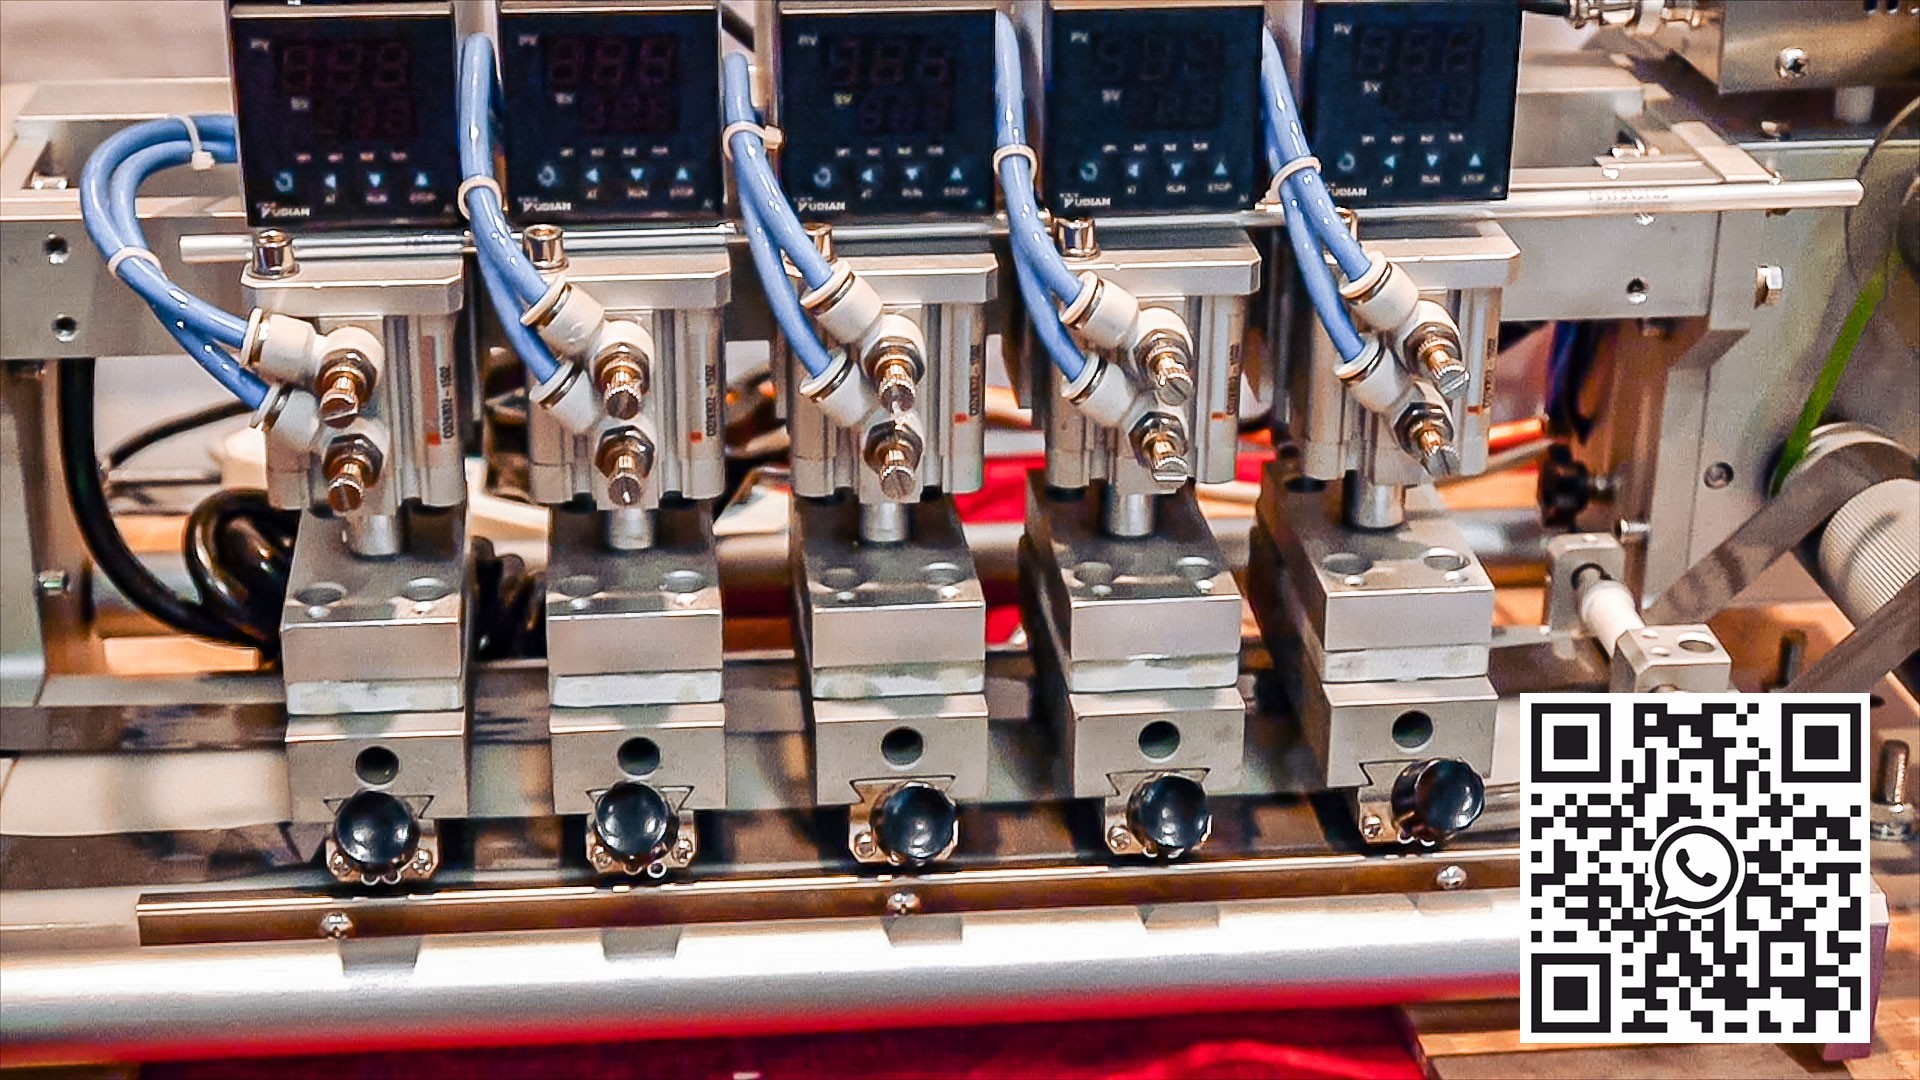 Equipo automático para imprimir la vida útil en materiales en rollo Alemania